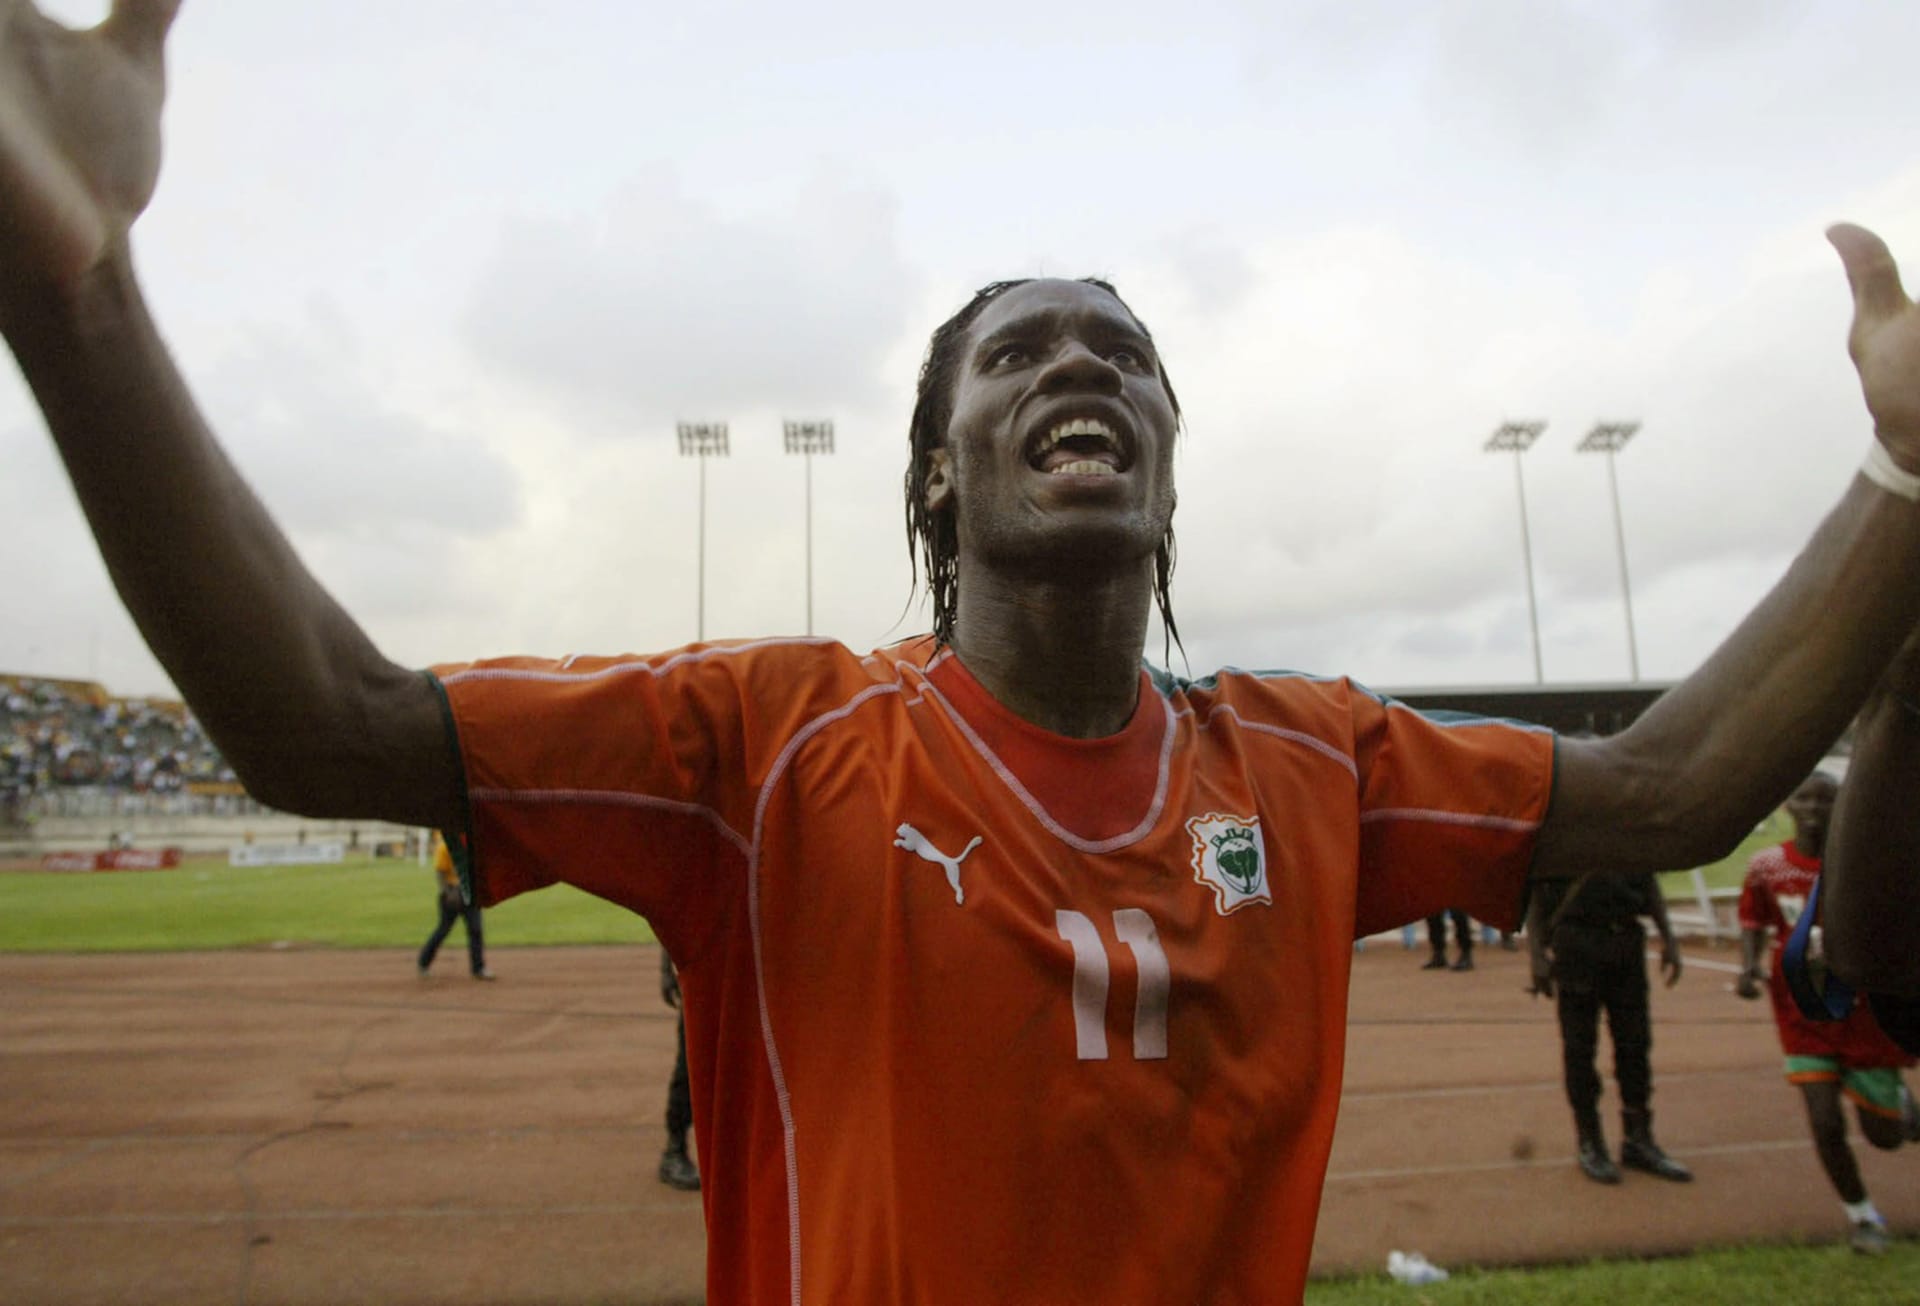 V kvalifikaci na MS 2006 tým vedený Drogbou dvakrát porazil Egypt (v obou utkáních kapitán „slonů“ skóroval), ale v zápasech s Kamerunem podlehl. To, společně s výsledky ostatních utkání, udrželo souboj o vítěze africké skupiny 3 otevřený až do závěru.